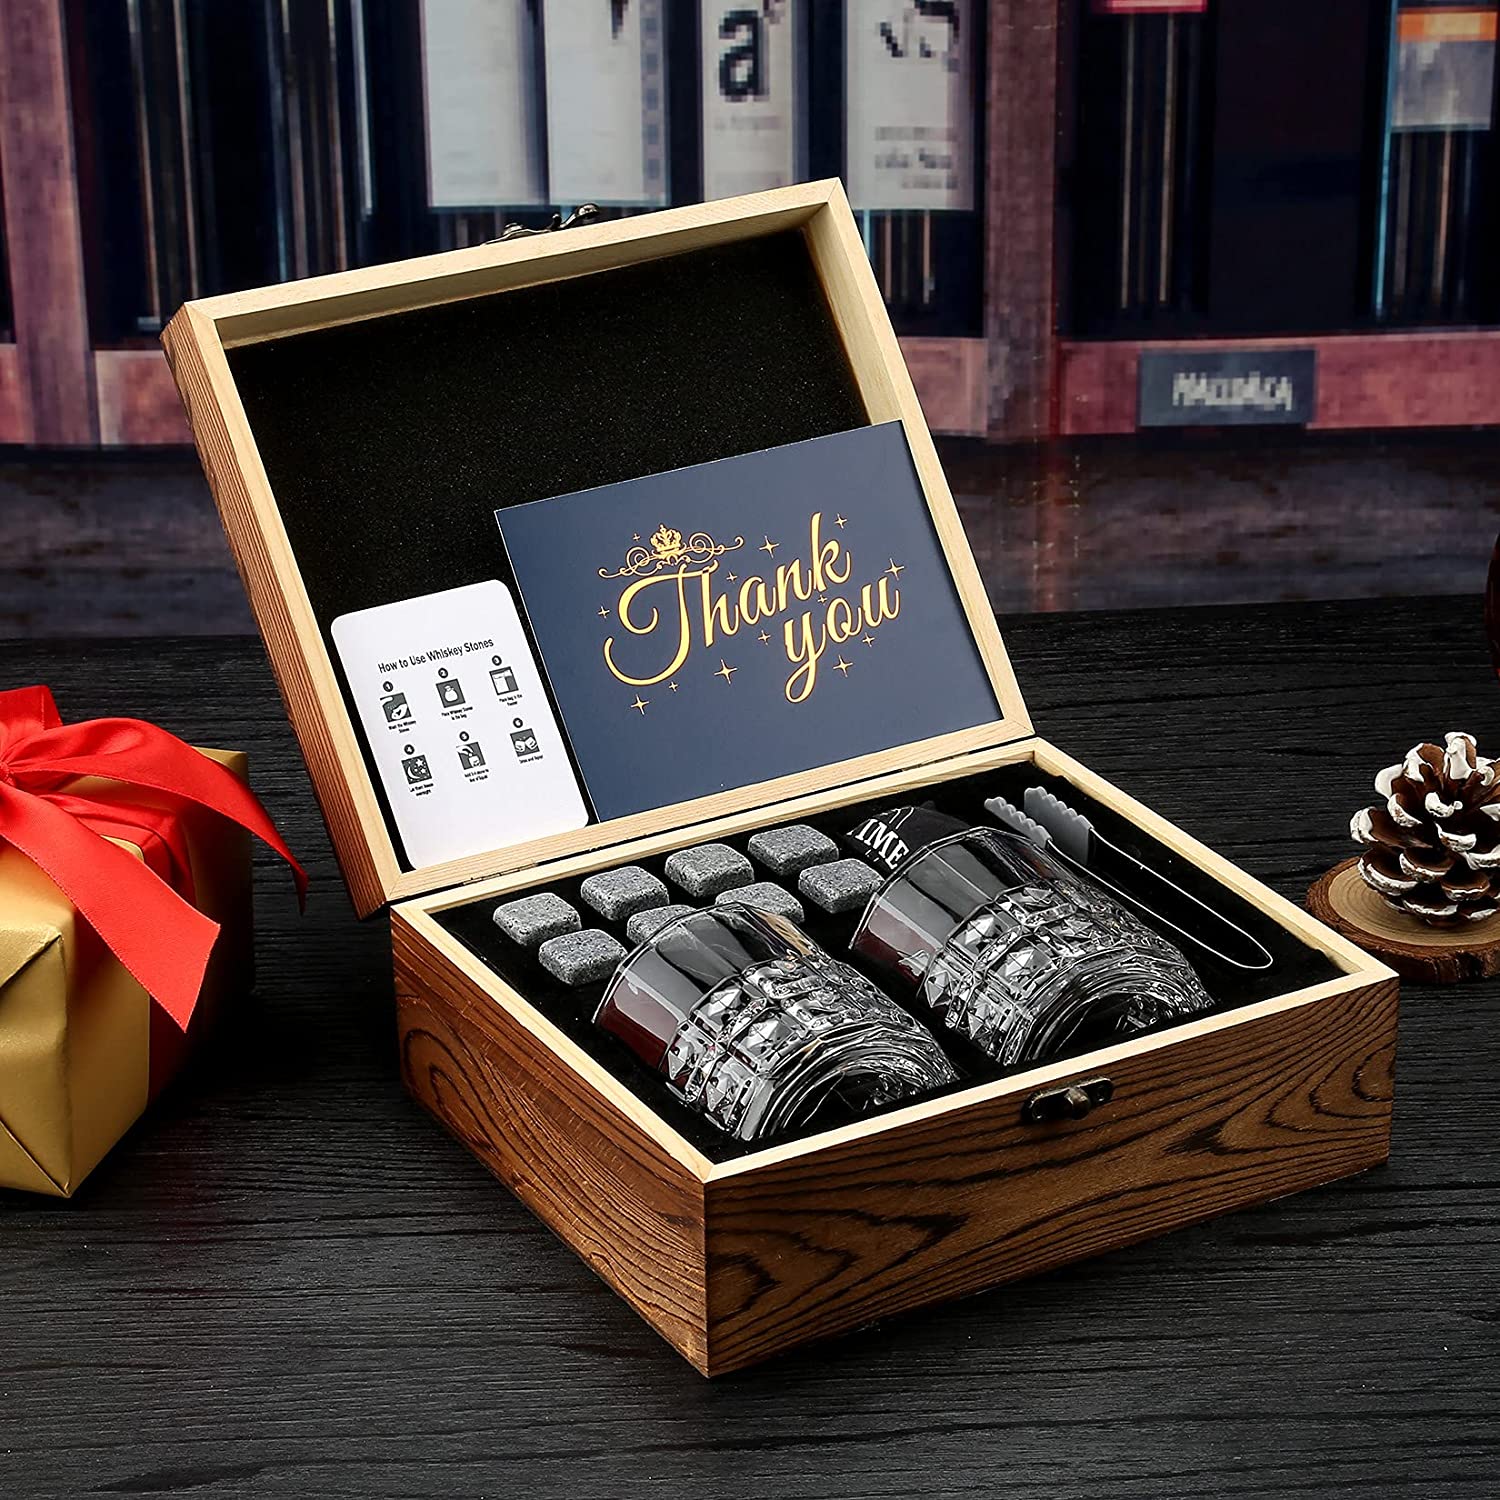 Whisky Stones Glasses Gift Set, bolsa de veludo para beber uísque escocês ou gin, caixa de madeira presente para Natal/aniversário